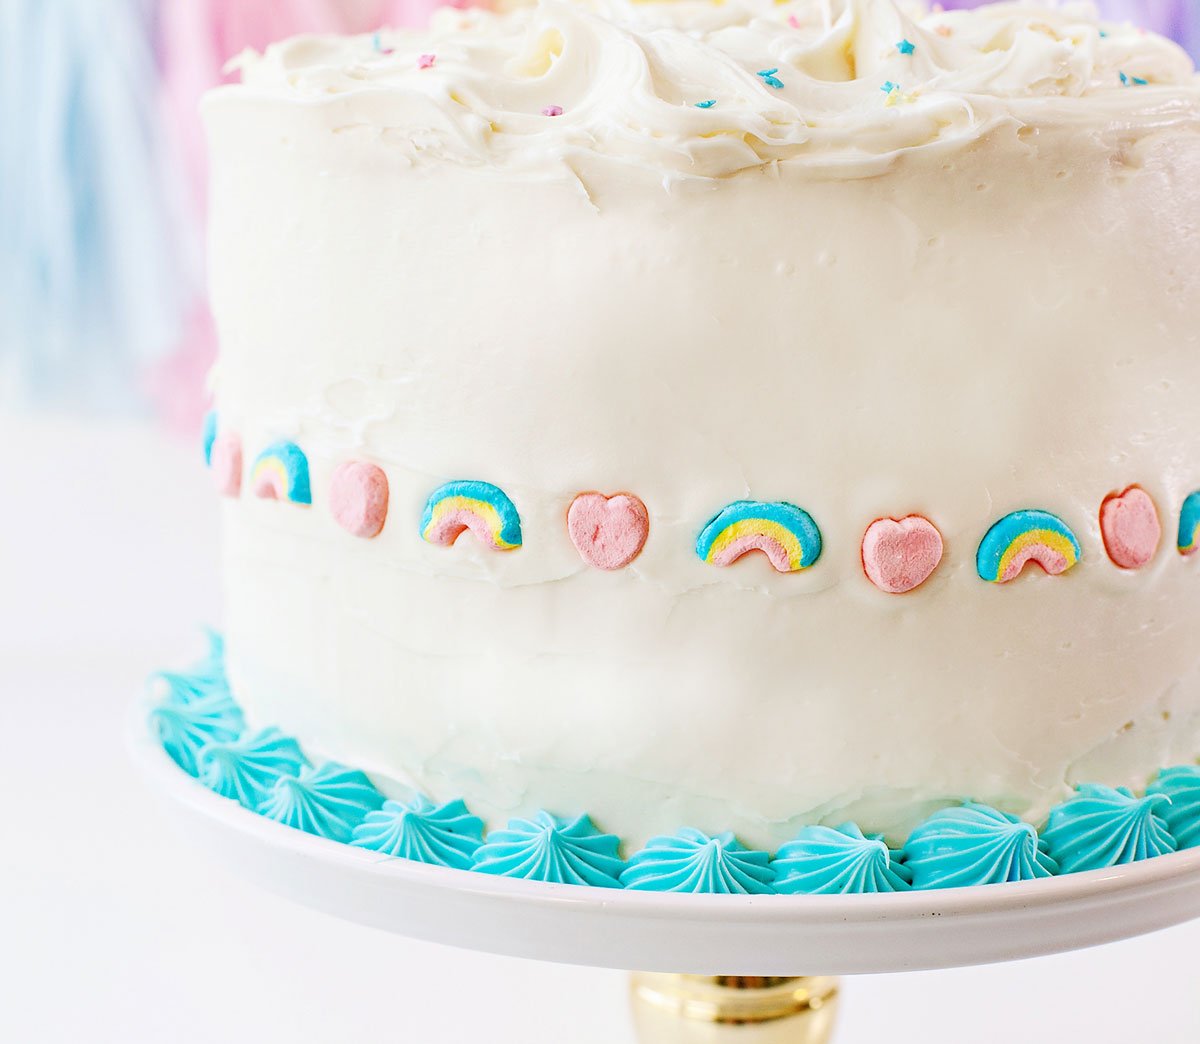 https://www.hwtm.com/wp-content/uploads/2021/03/easy-rainbow-unicorn-cake_3.jpg